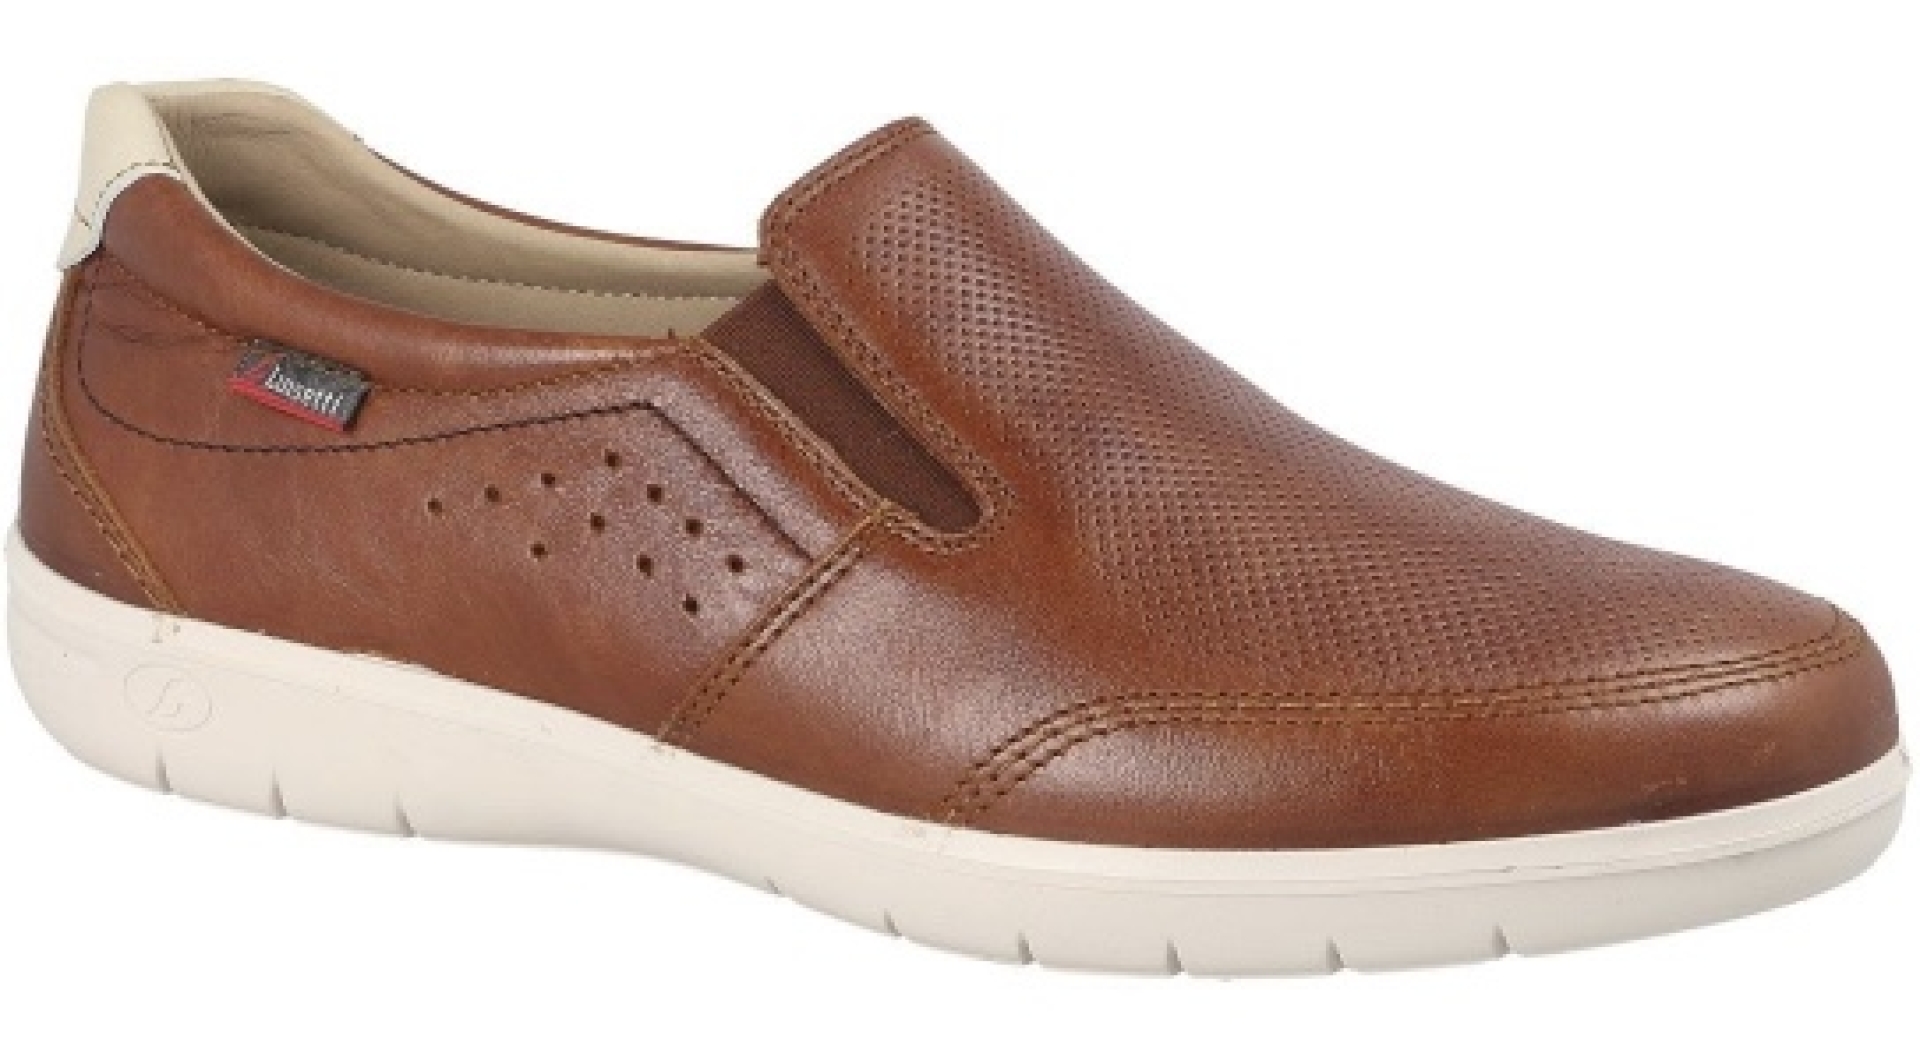 Zapato mocasín en piel marrón para hombre de LUISETTI. H-299